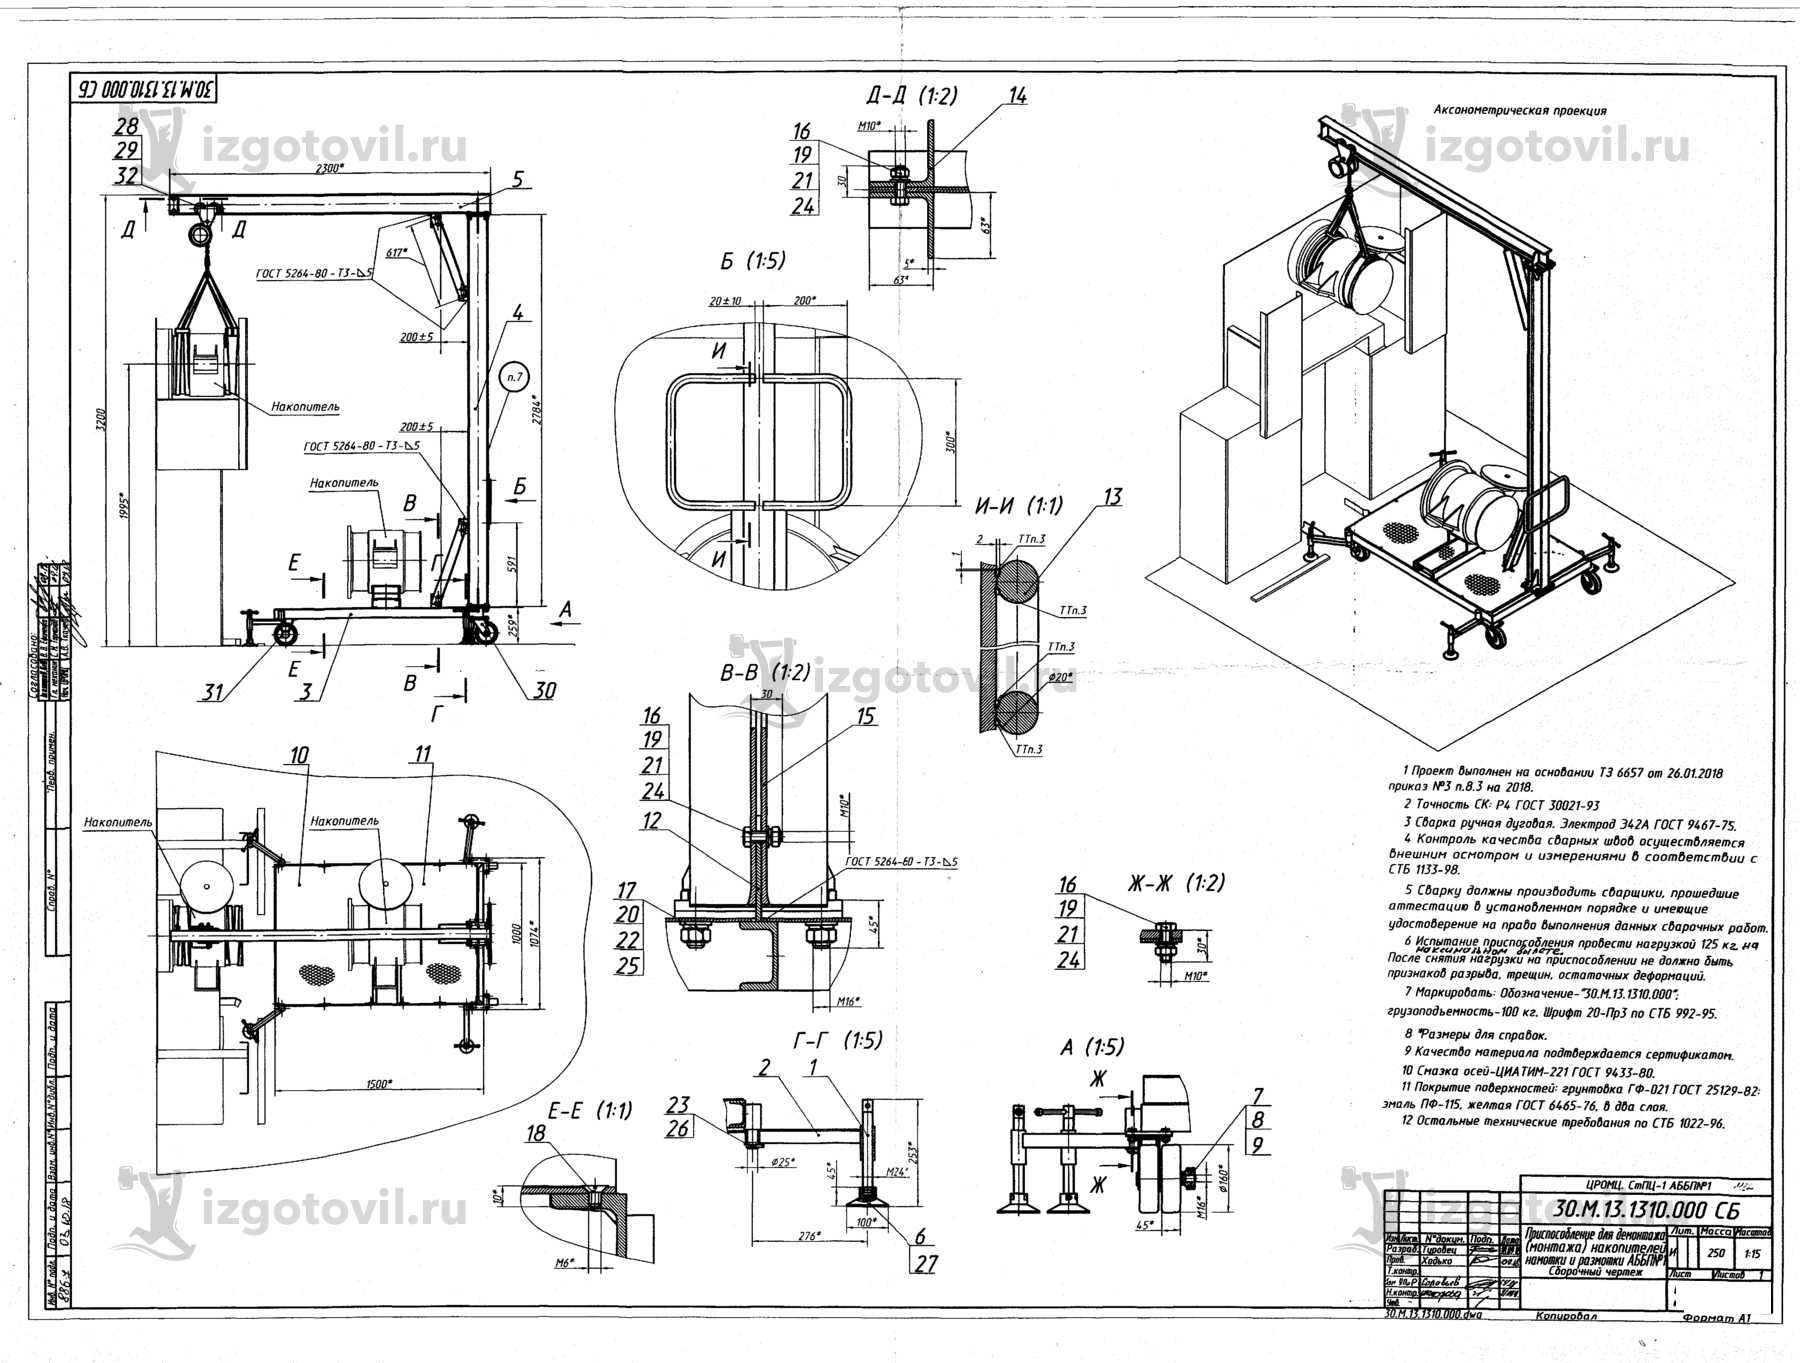 Изготовление деталей оборудования (приспособление для демонтажа(монтажа) накопителей намотки и размотки АББП№1)